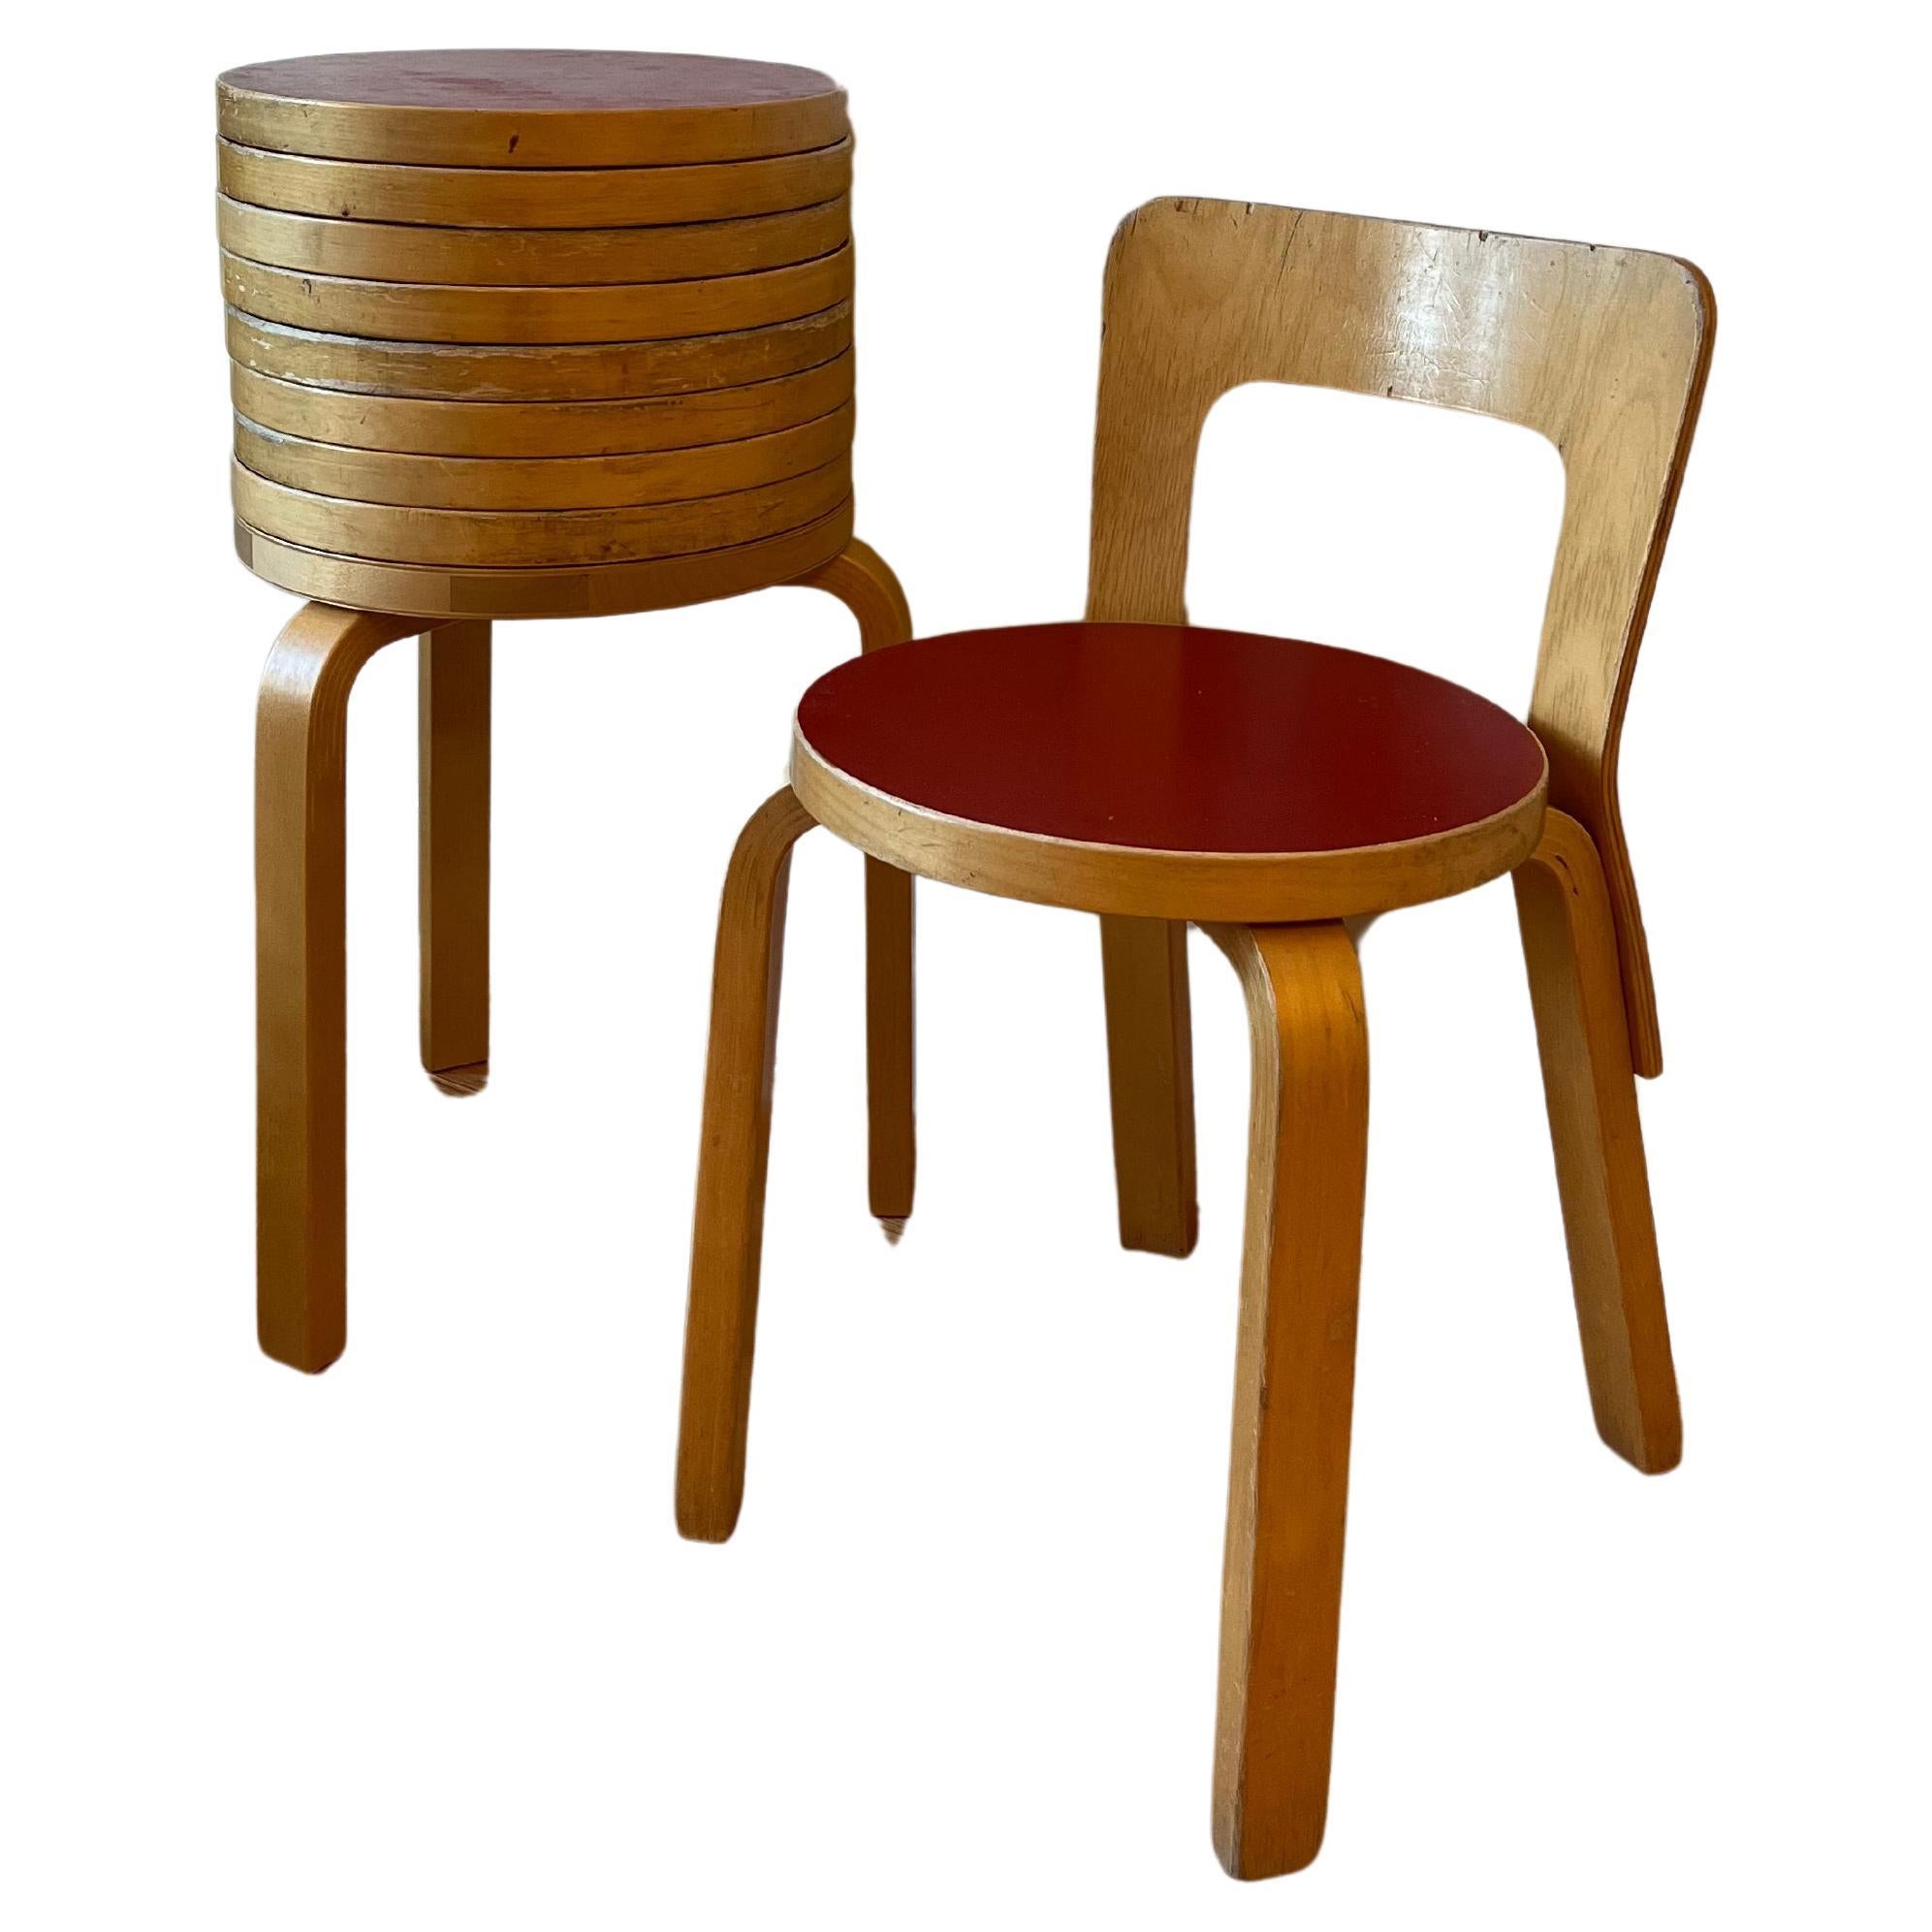 Chair 65 by Alvar Aalto for Artek (Red Linoleum)